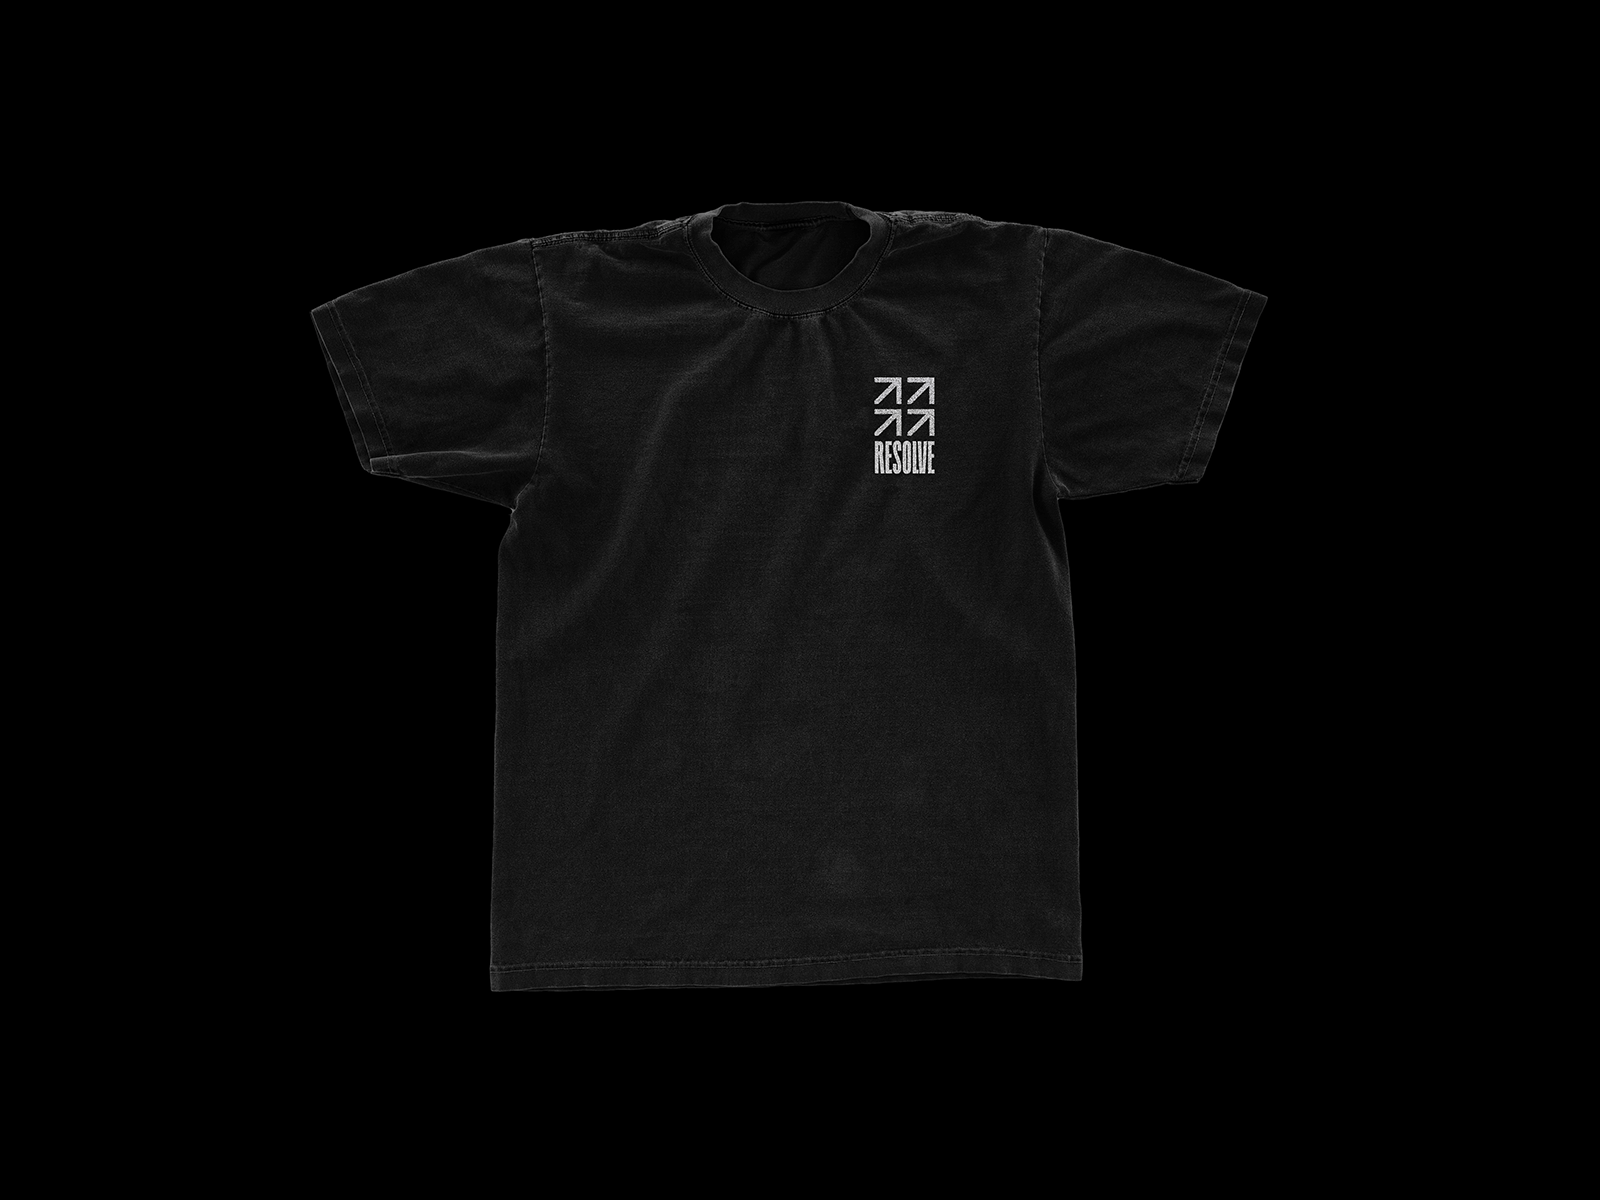 International Justice Mission branding brutalism brutalist charity design logo merch shirt mockup tote tshirt